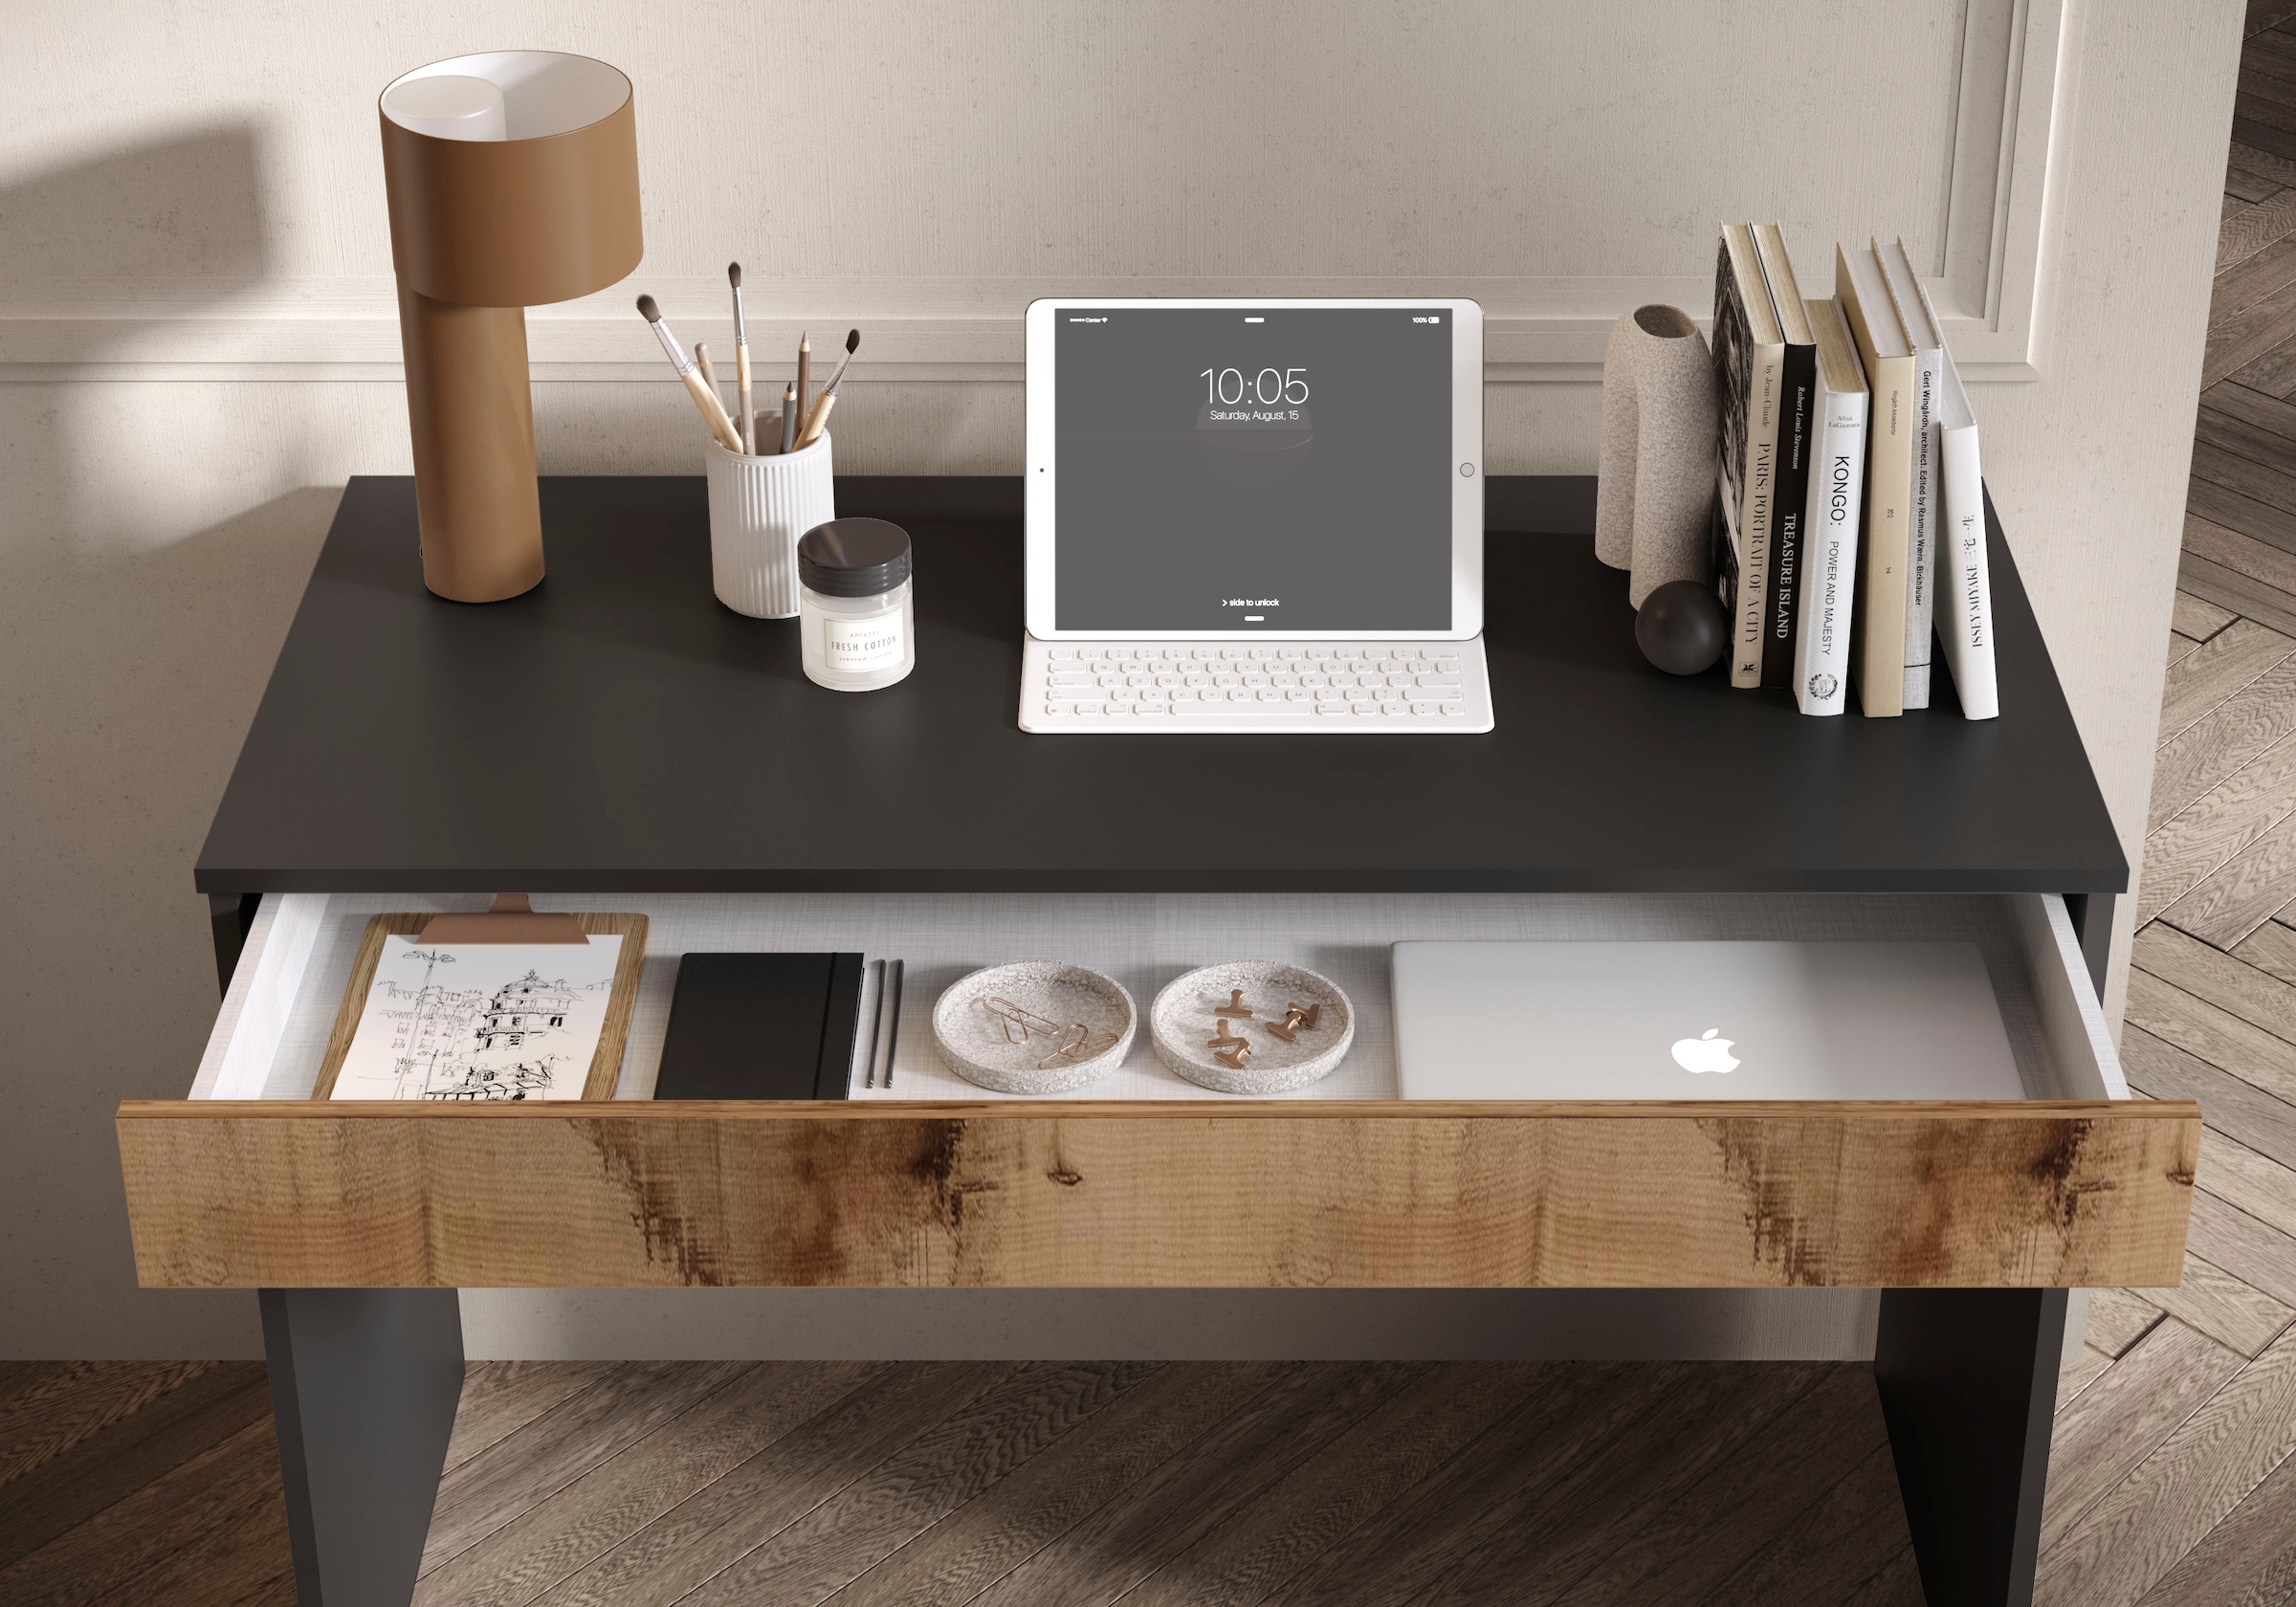 LC Schreibtisch »Basic, Computertisch mit 1 Schublade«, Arbeitstisch, Schminktisch in versch. Farben, Breite 78 oder 110 cm